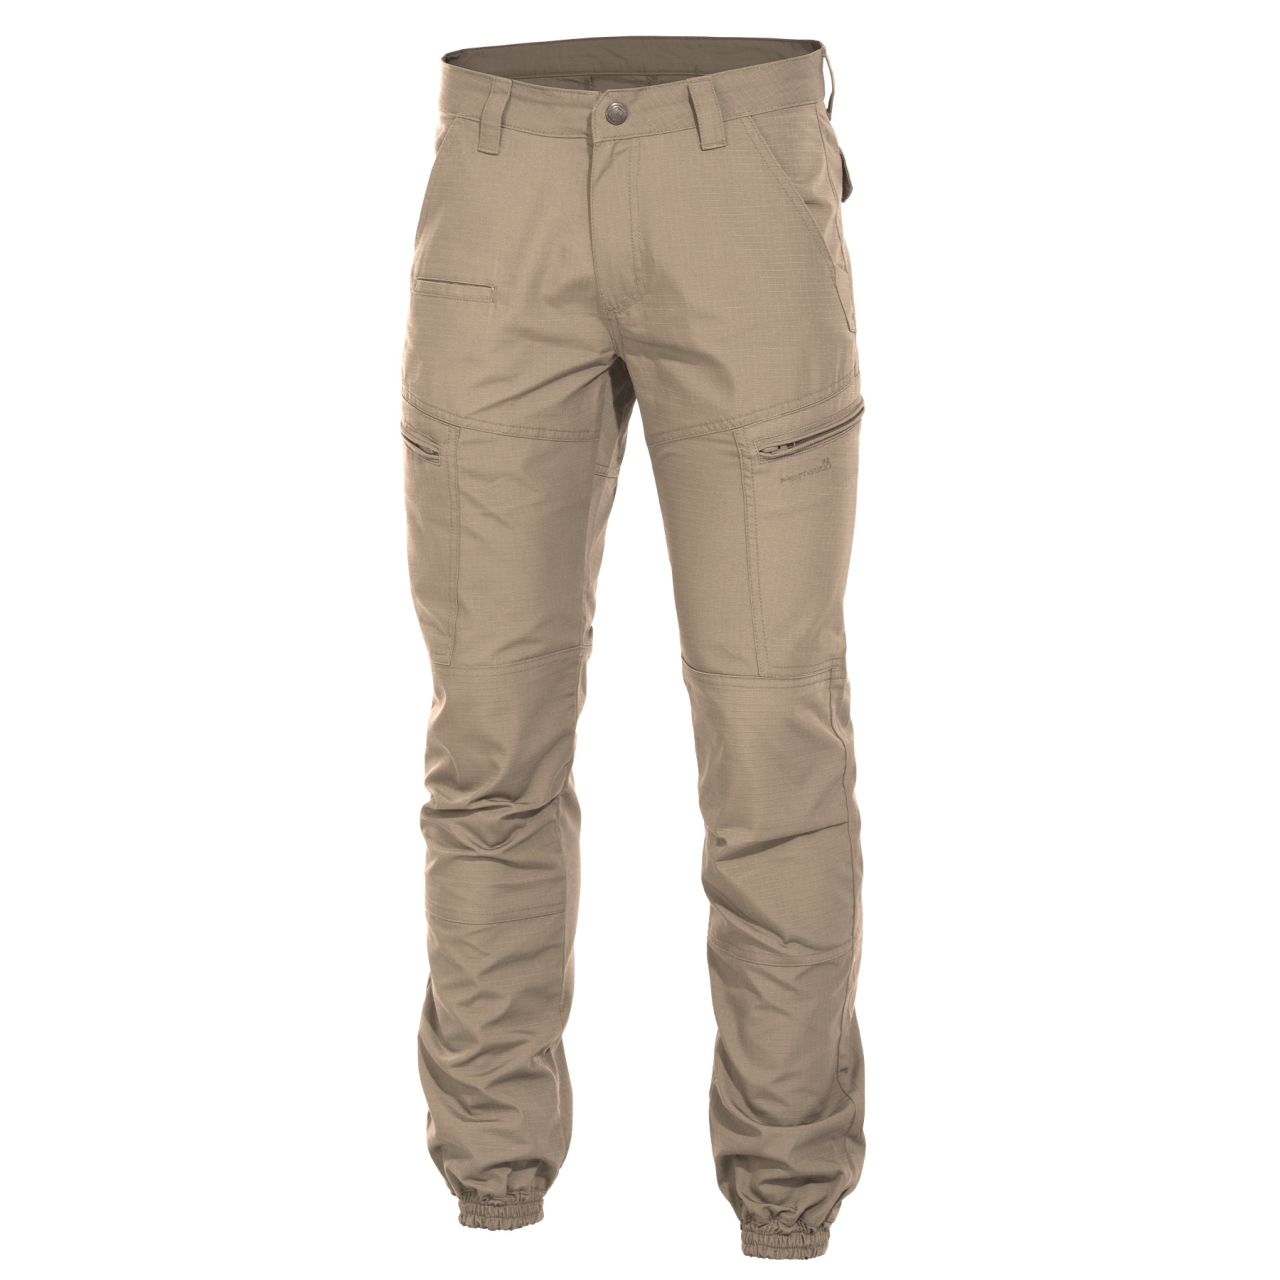 Kalhoty Pentagon Ypero - béžové, 46 XL